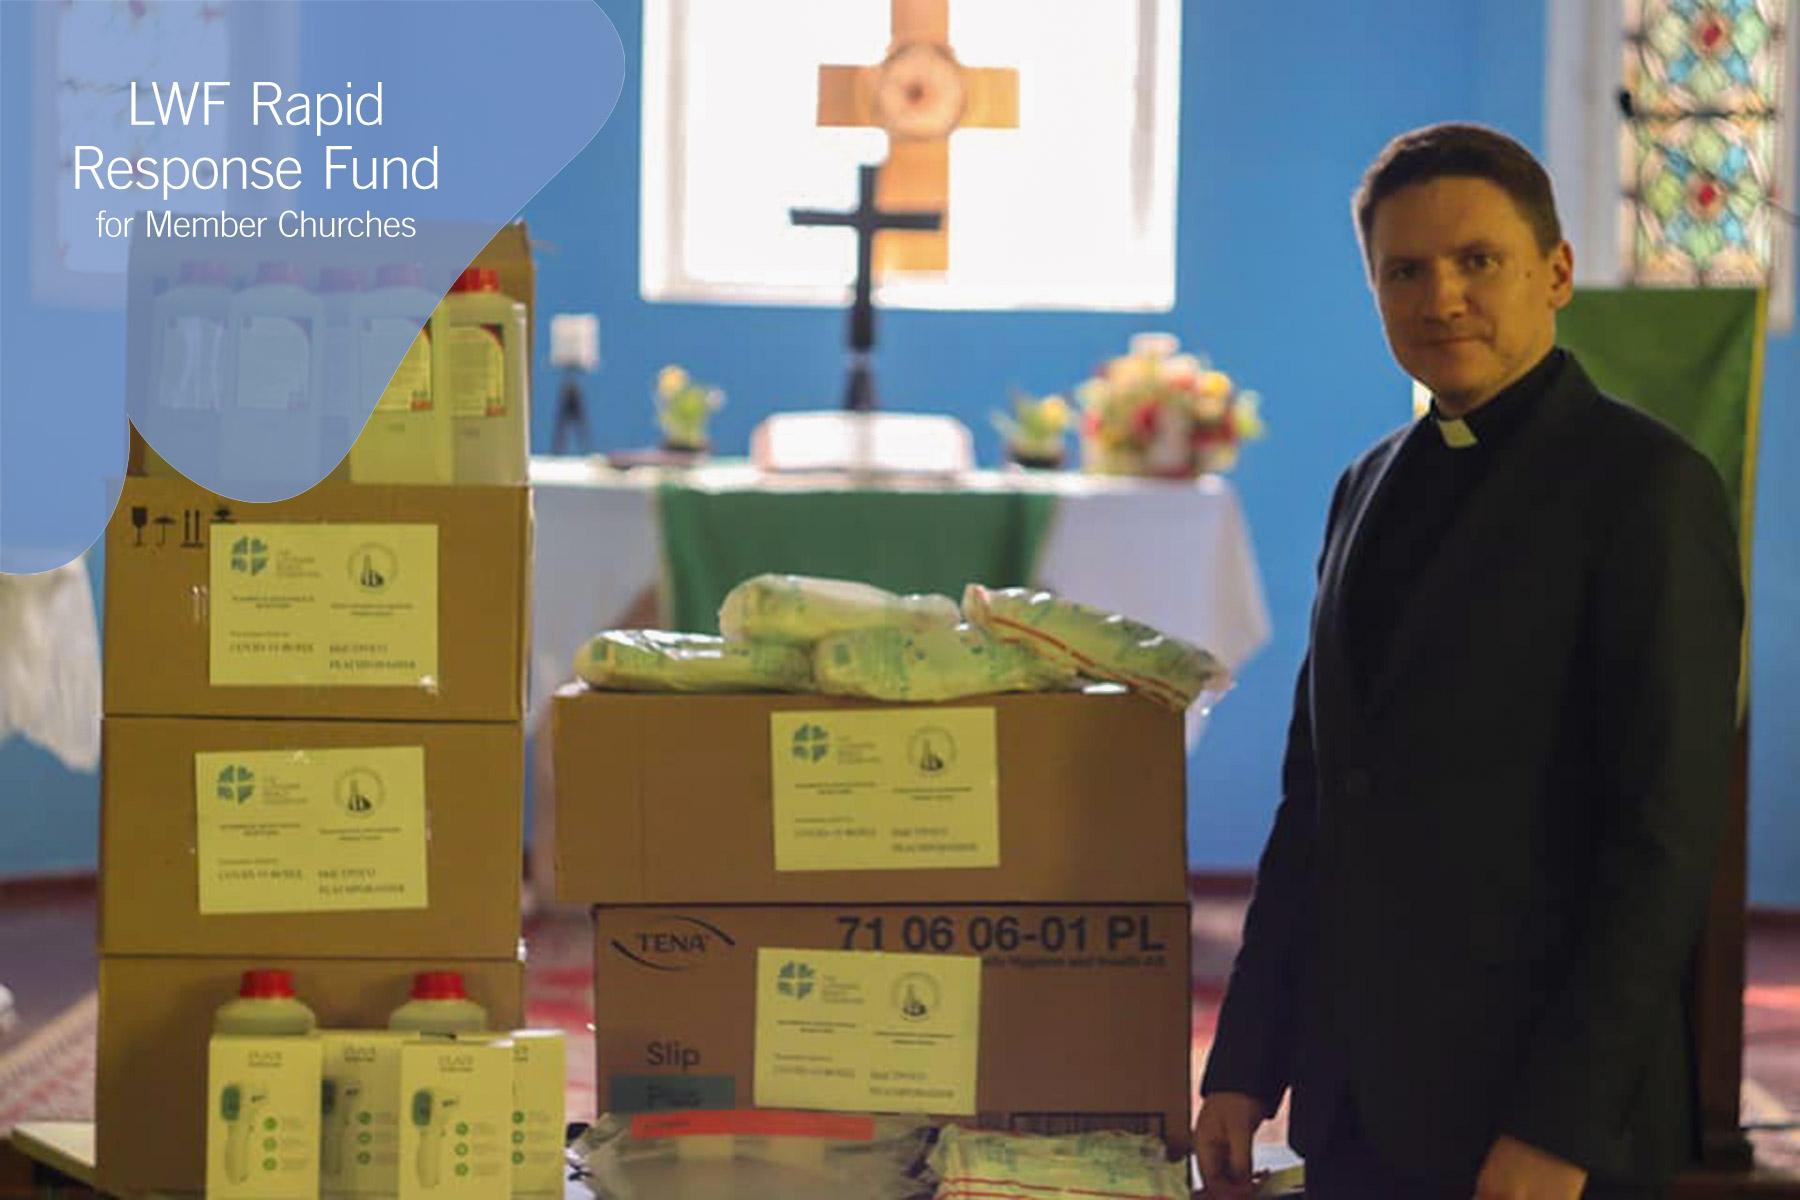 Pfarrer Vladimir Tatarnikow von der Lutherischen Kirche in Grodno, Belarus, mit den Vorräten an Schutzausrüstung und Hilfsmitteln im Kampf gegen die Ausbreitung von COVID-19, die dank der Hilfe aus dem Soforthilfe-Fonds des LWB gekauft werden konnten. Foto: Lutherische Kirche in Grodno